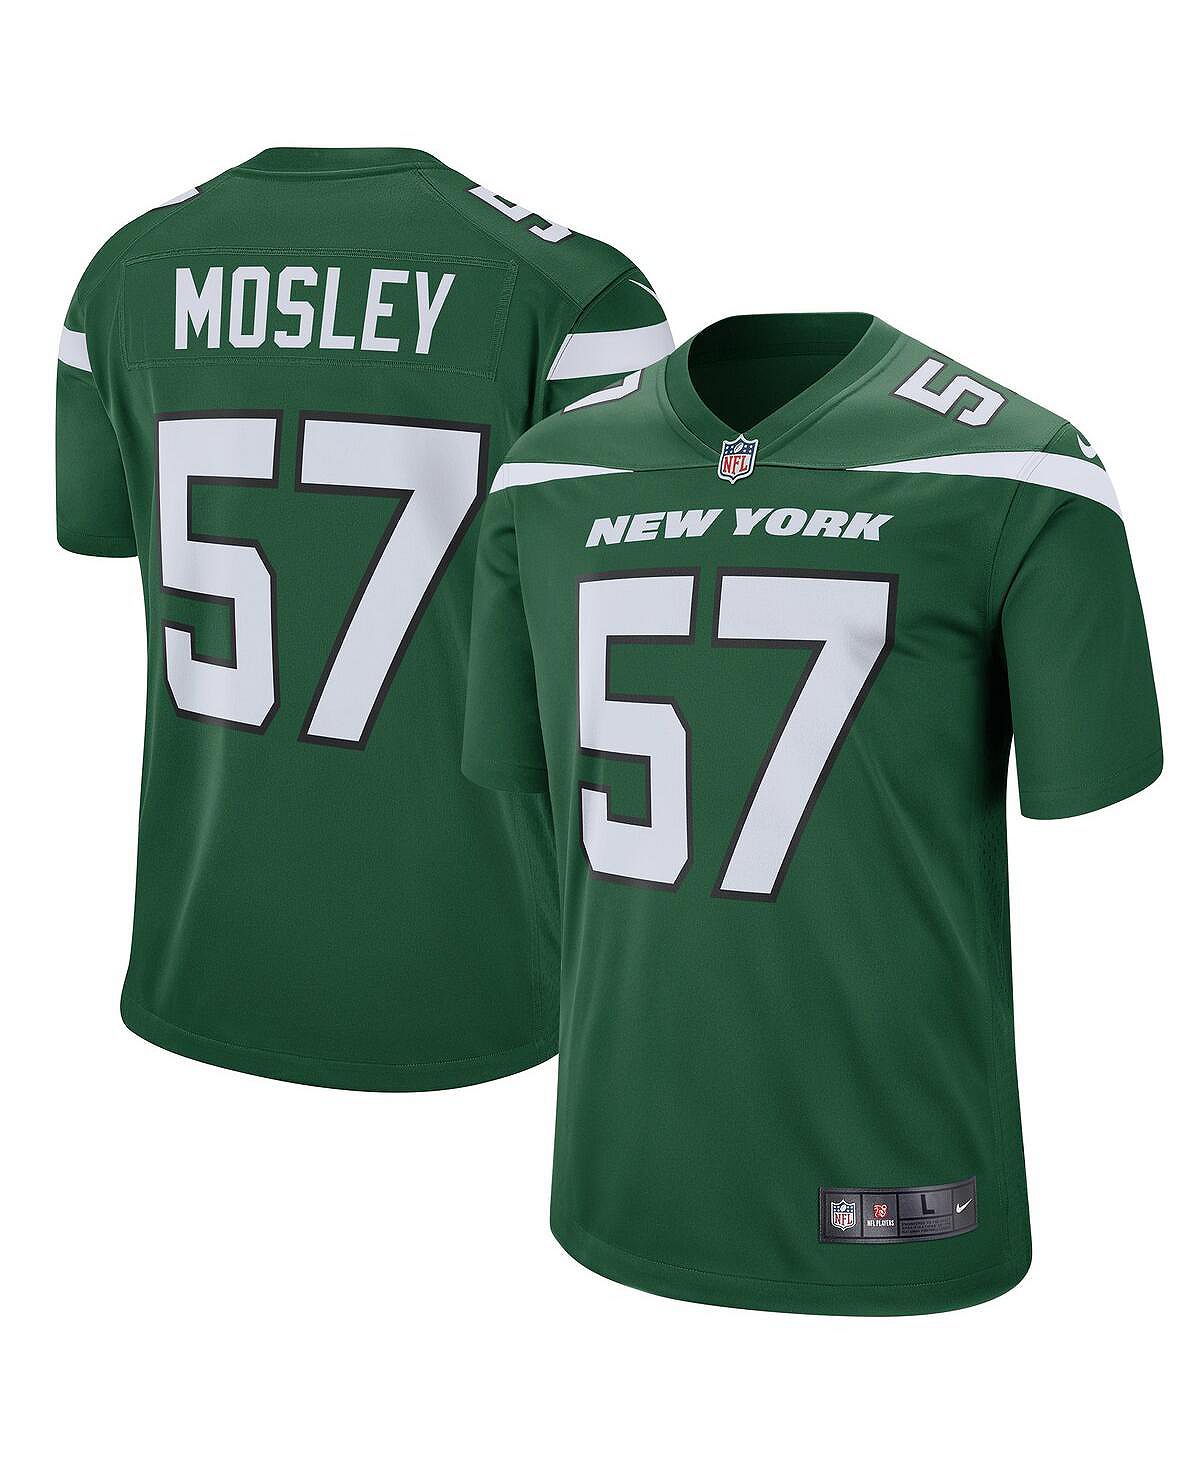 Мужская футболка cj mosley gotham green new york jets game jersey Nike, зеленый york